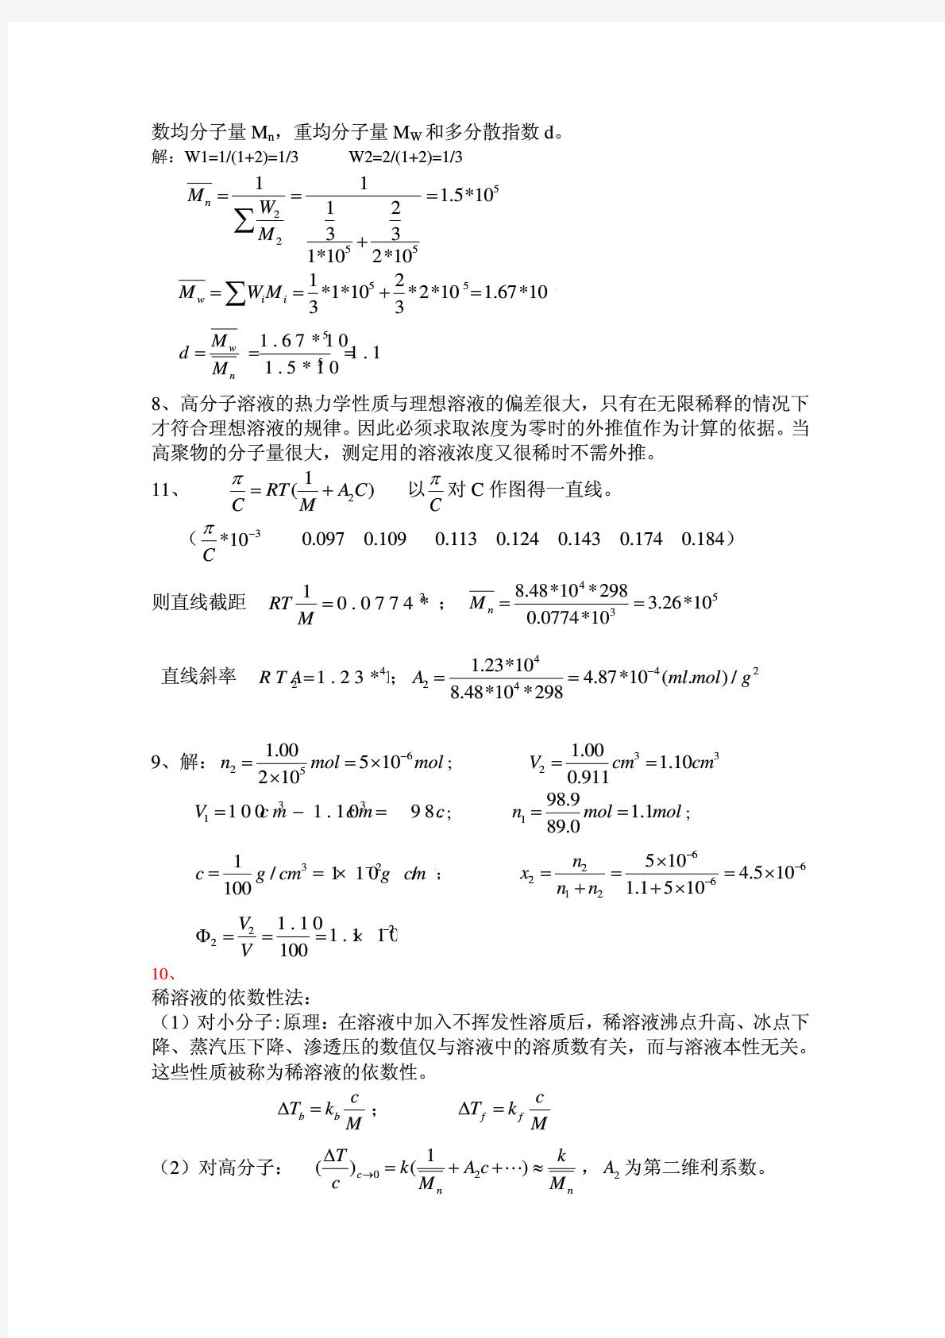 何曼君第三版高分子物理答案(全)